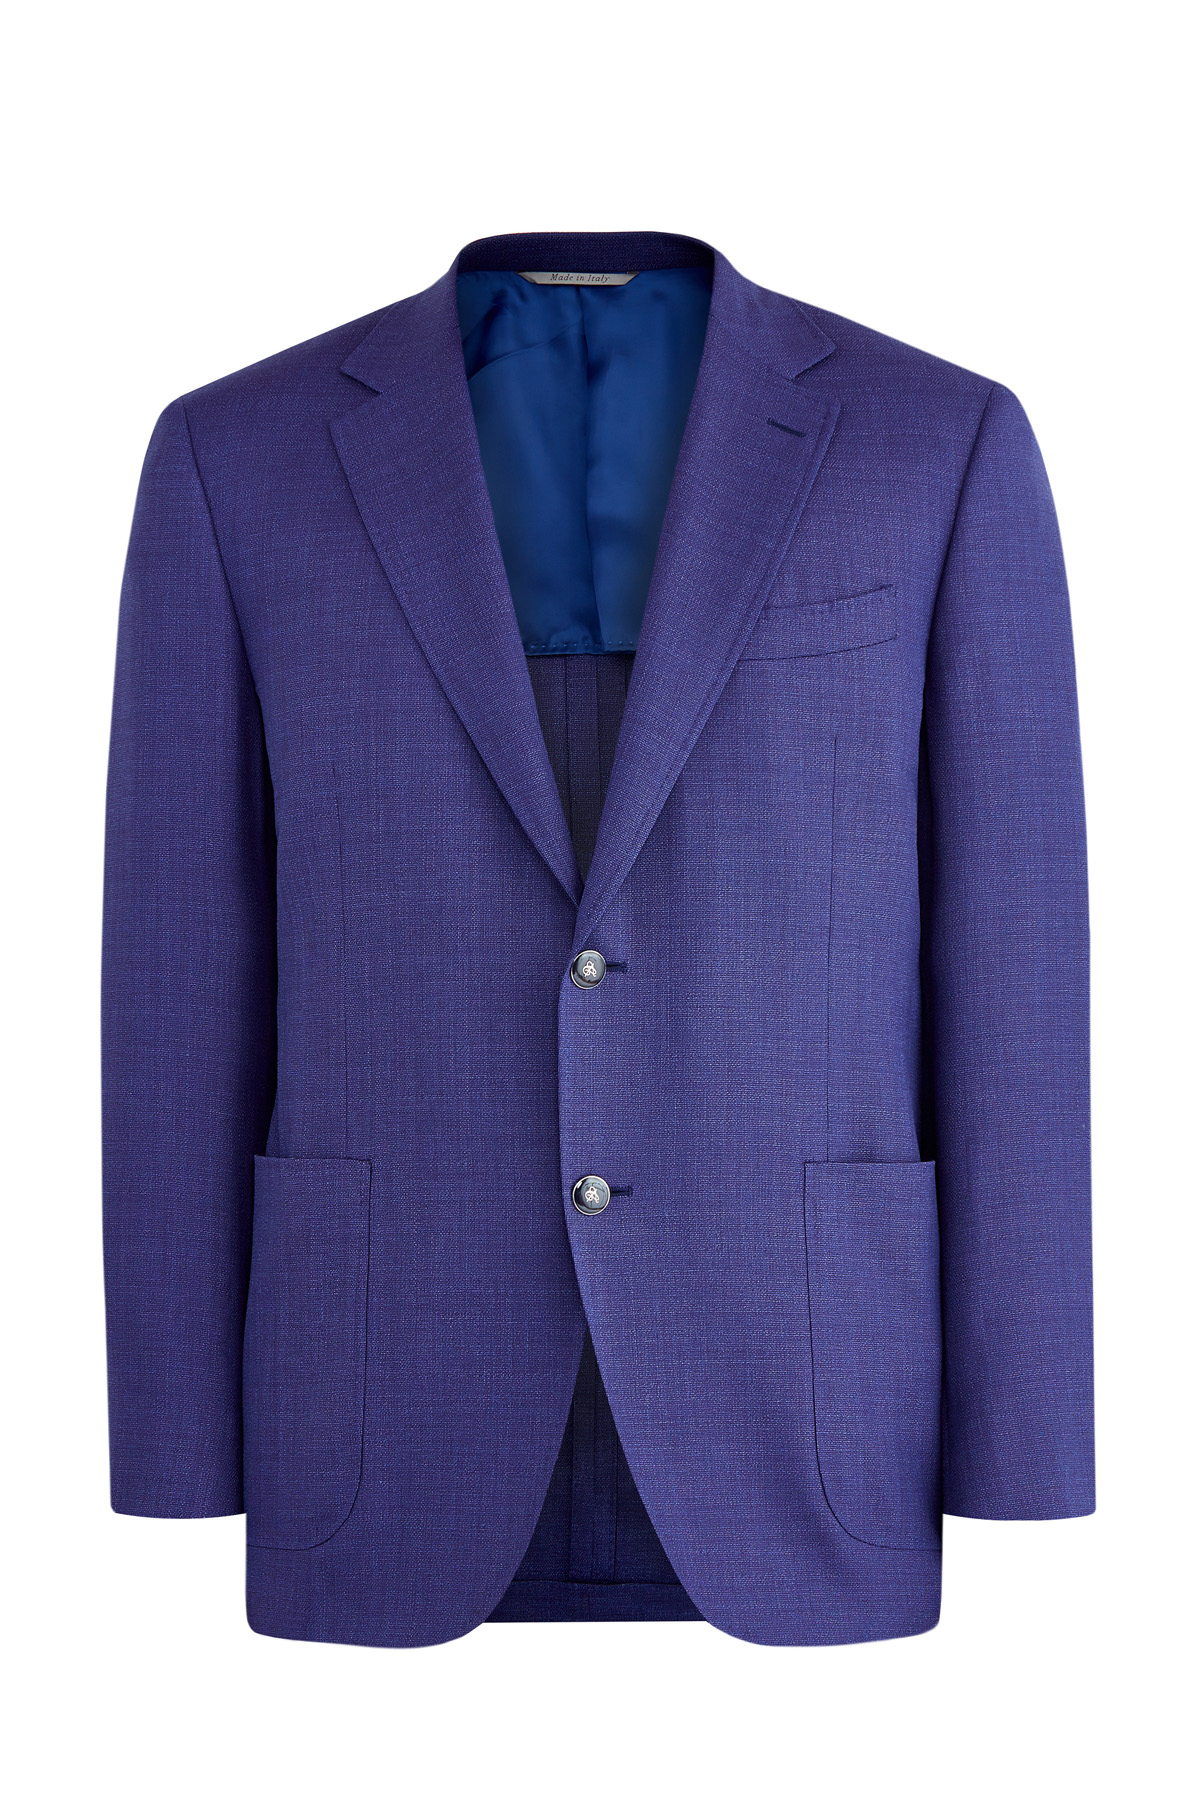 Однотонный пиджак кроя Kei из шерстяной ткани Impeccabile CANALI, цвет синий, размер 52;54;56;60;54;54;56